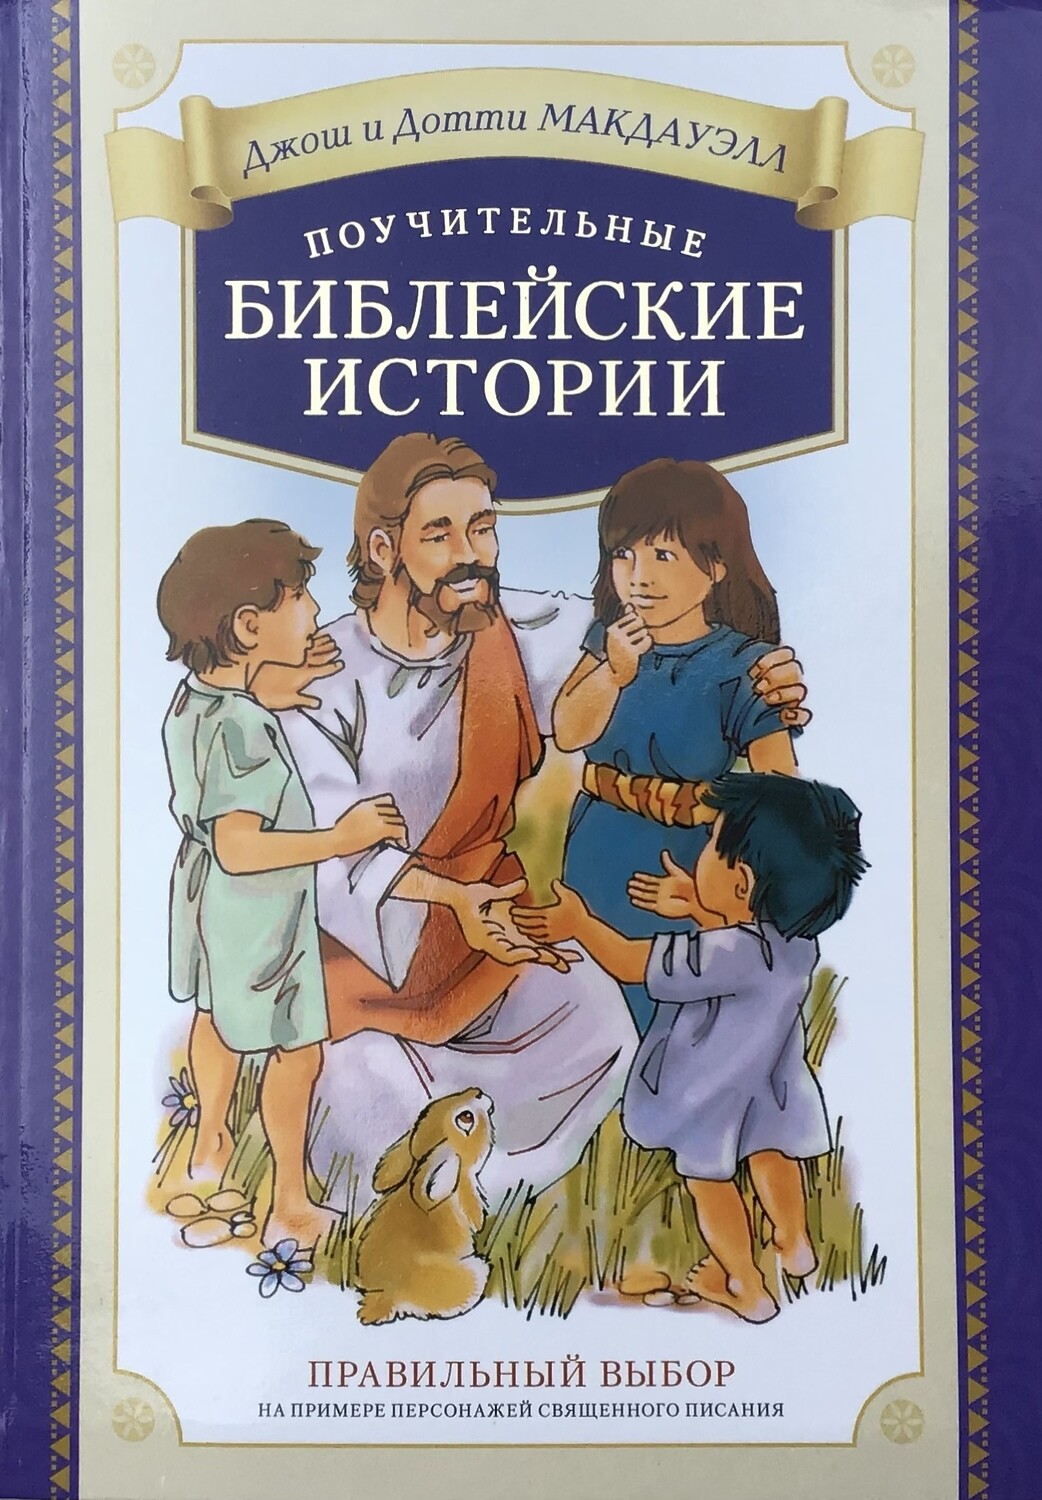 Интересные поучительные книги. Поучительные истории для детей. Библейские истории. Книга поучительные истории. Книжки поучительные для детей.